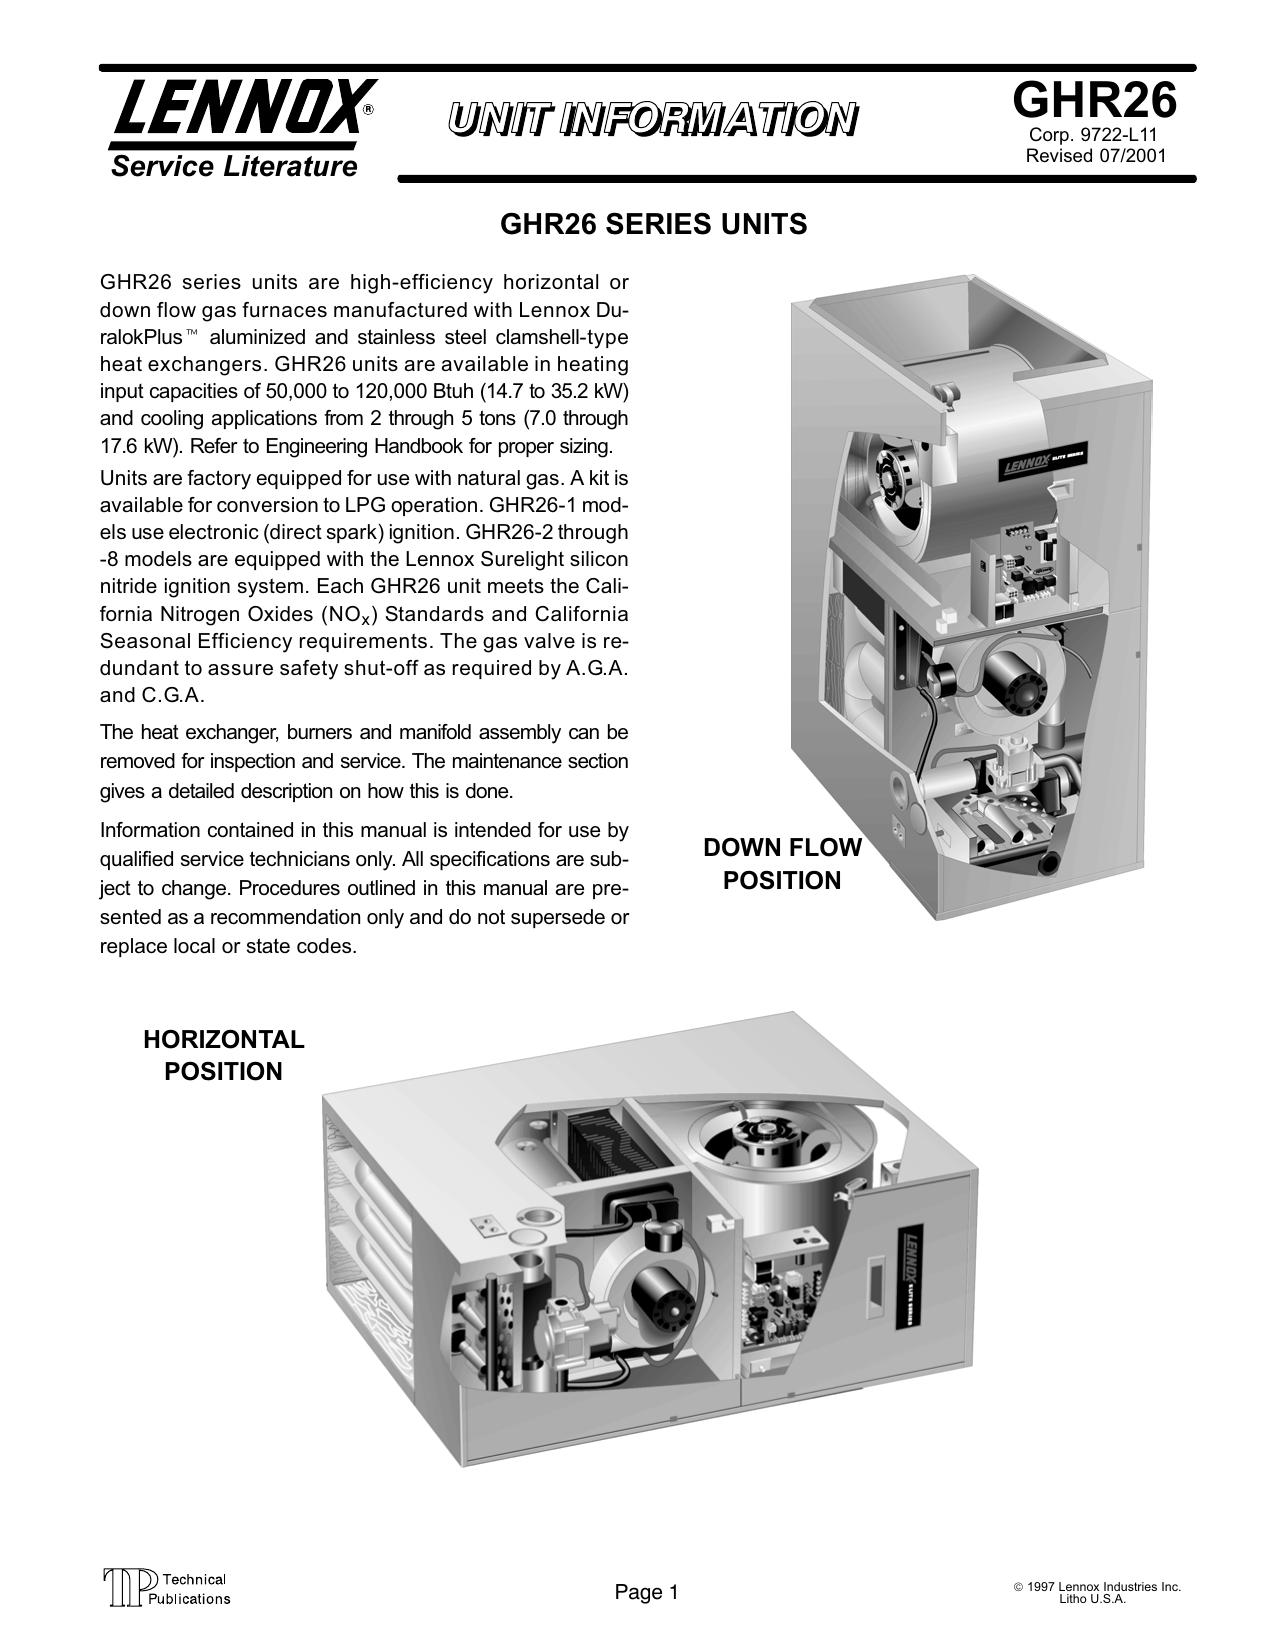 lennox furnace parts diagram